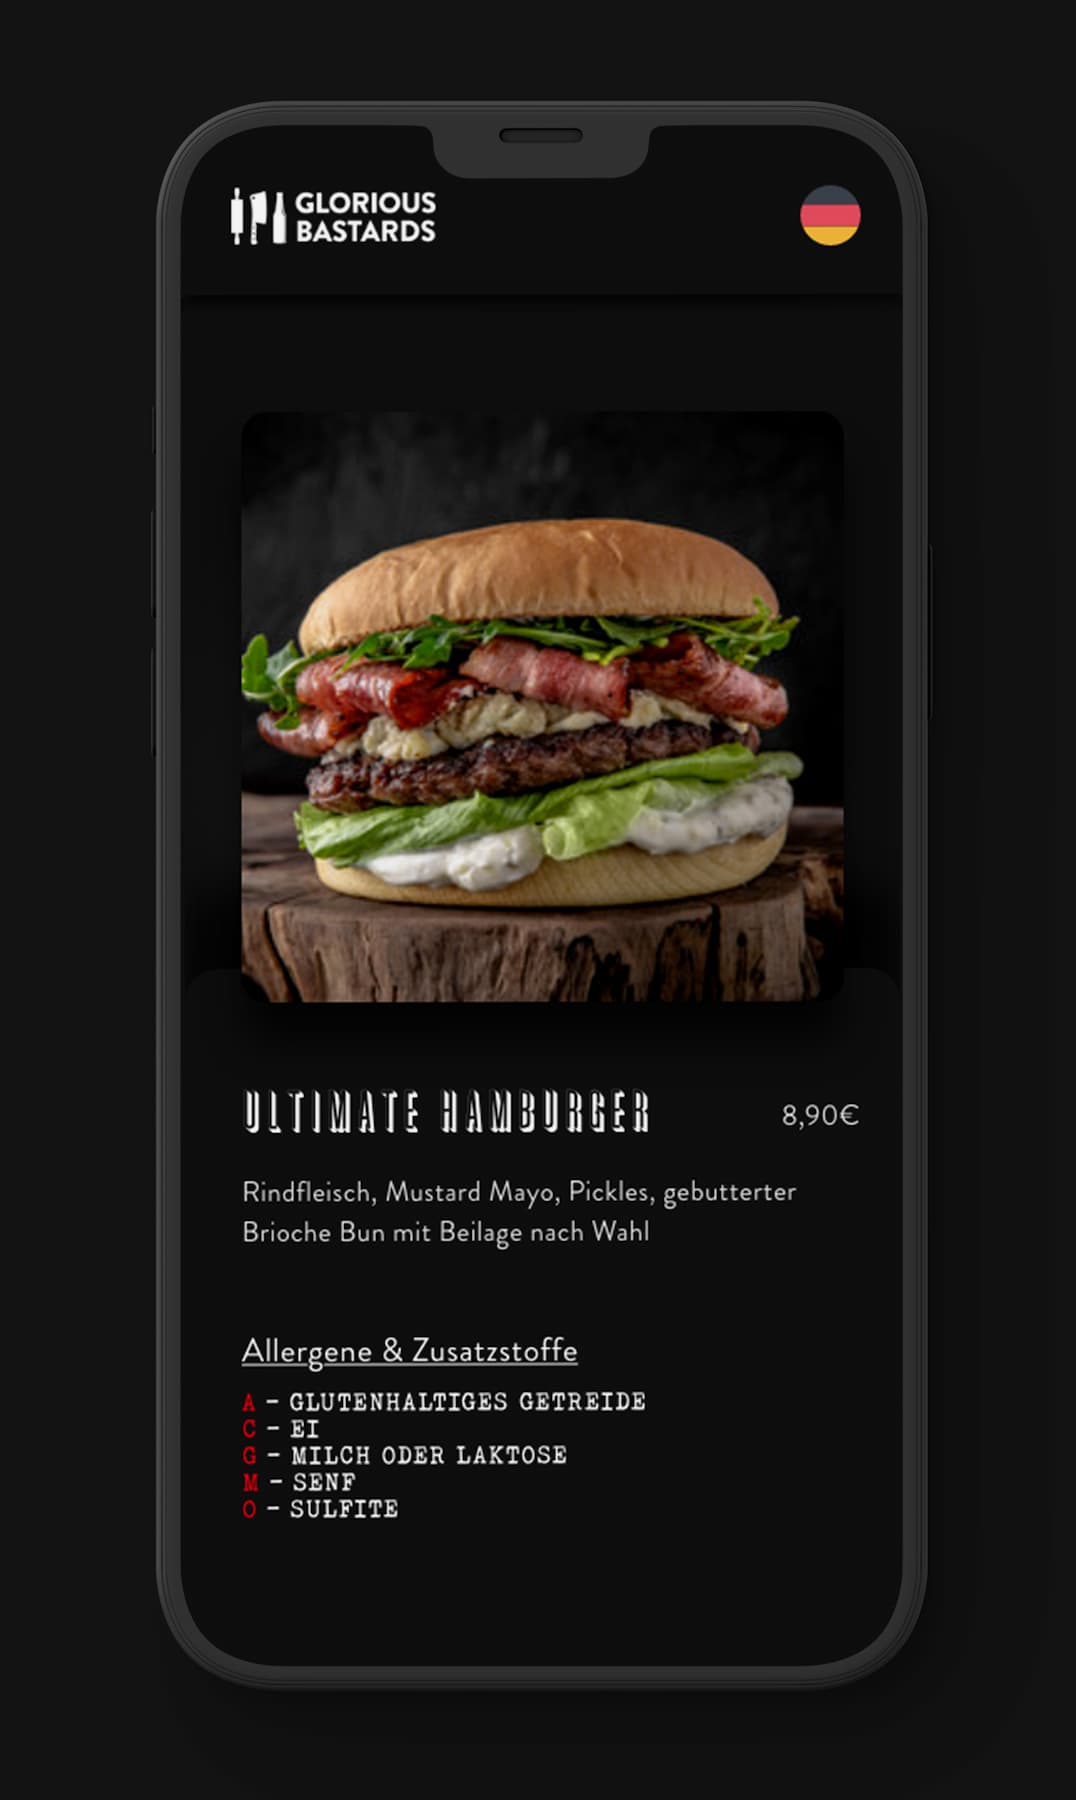 Detailansicht einer digitalen Speisekarte auf dem Smartphone